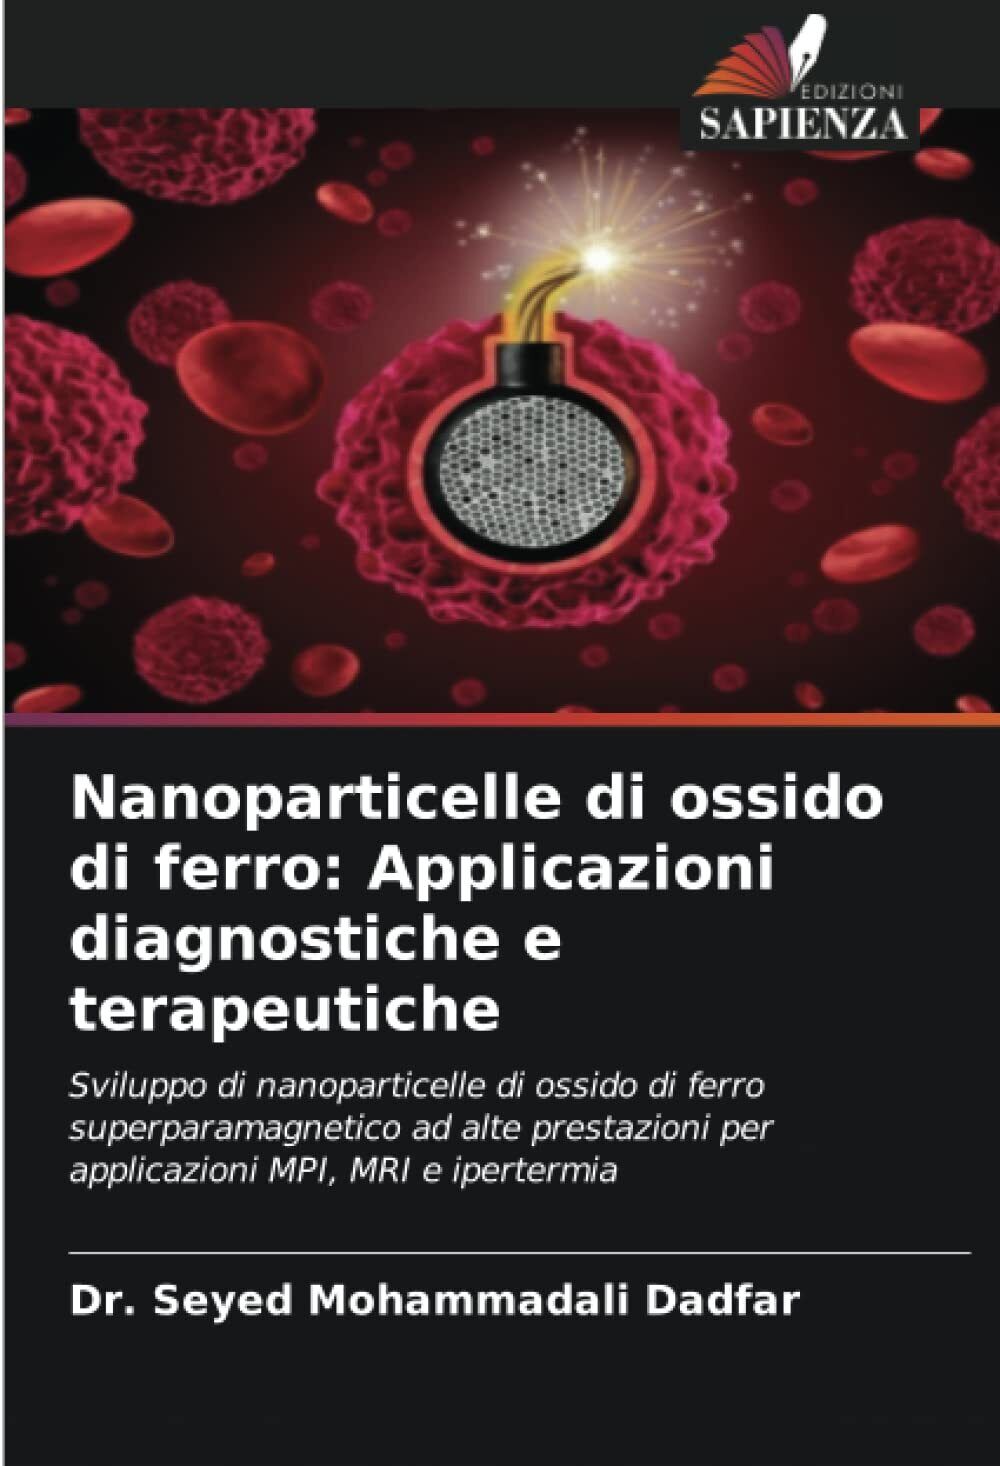 Nanoparticelle di ossido di ferro - Seyed Mohammadali Dadfar - Sapienza, 2022